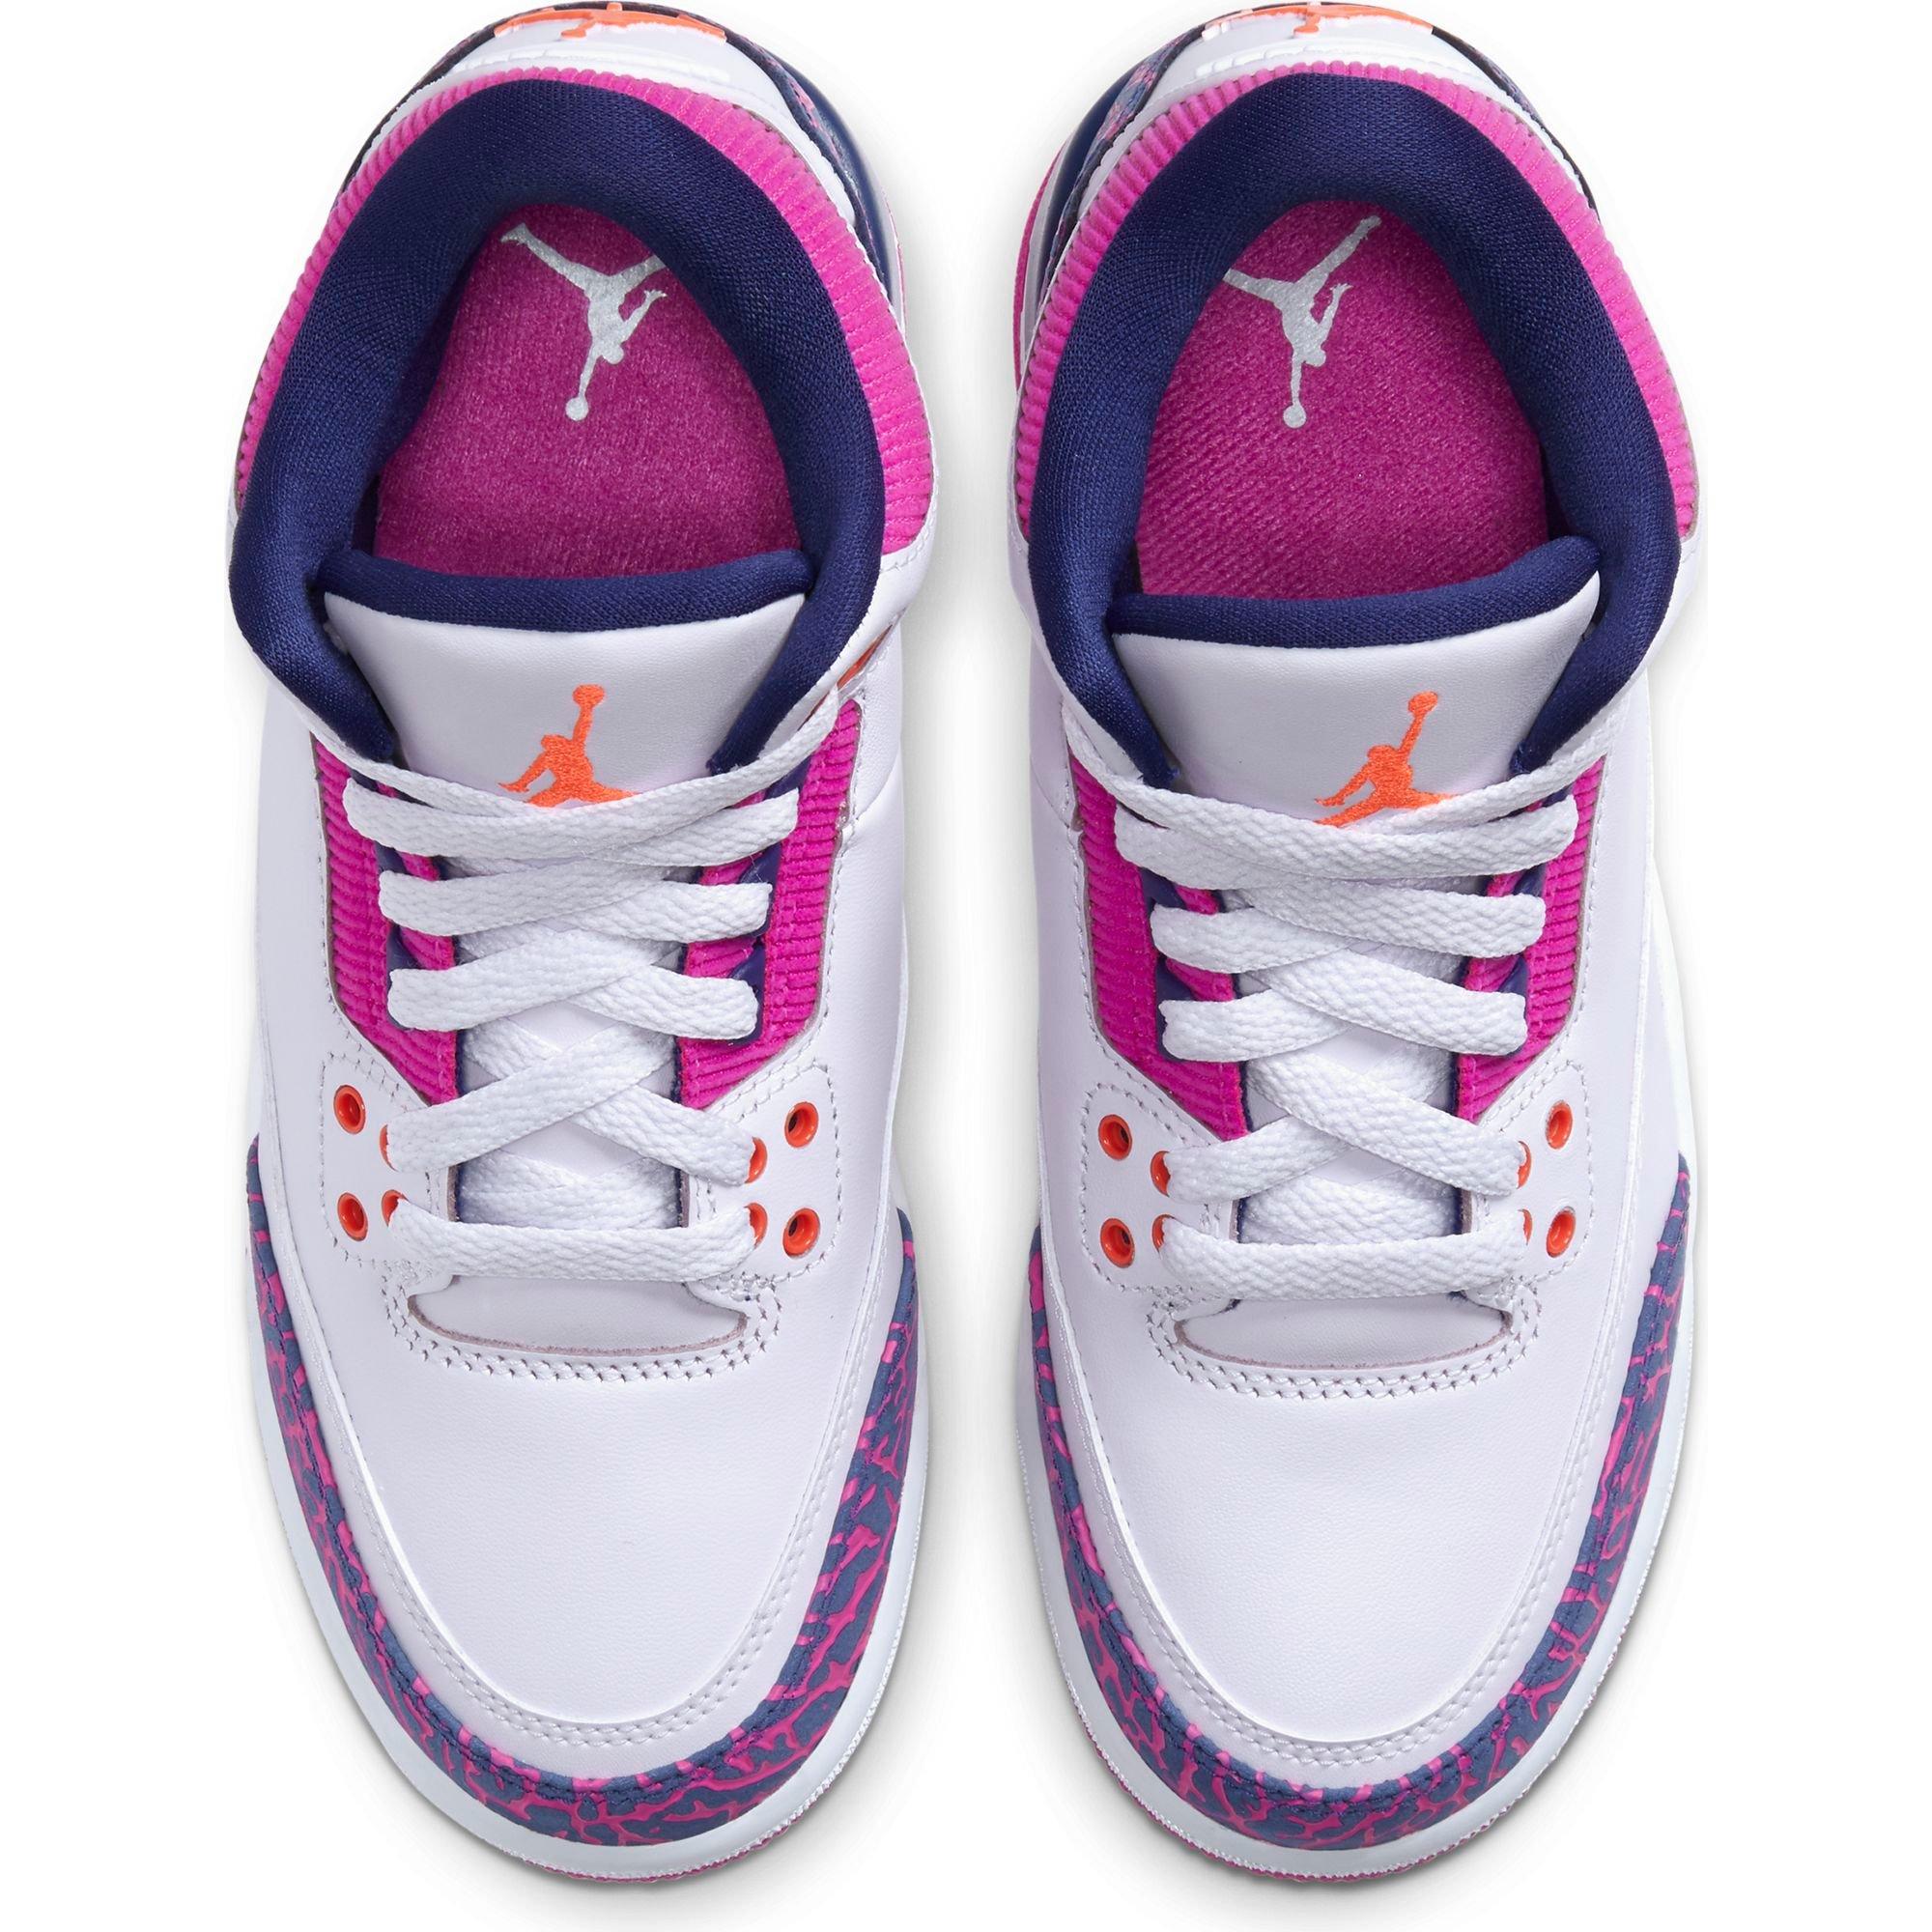 Sneakers Release – Air Jordan 3 Retro 